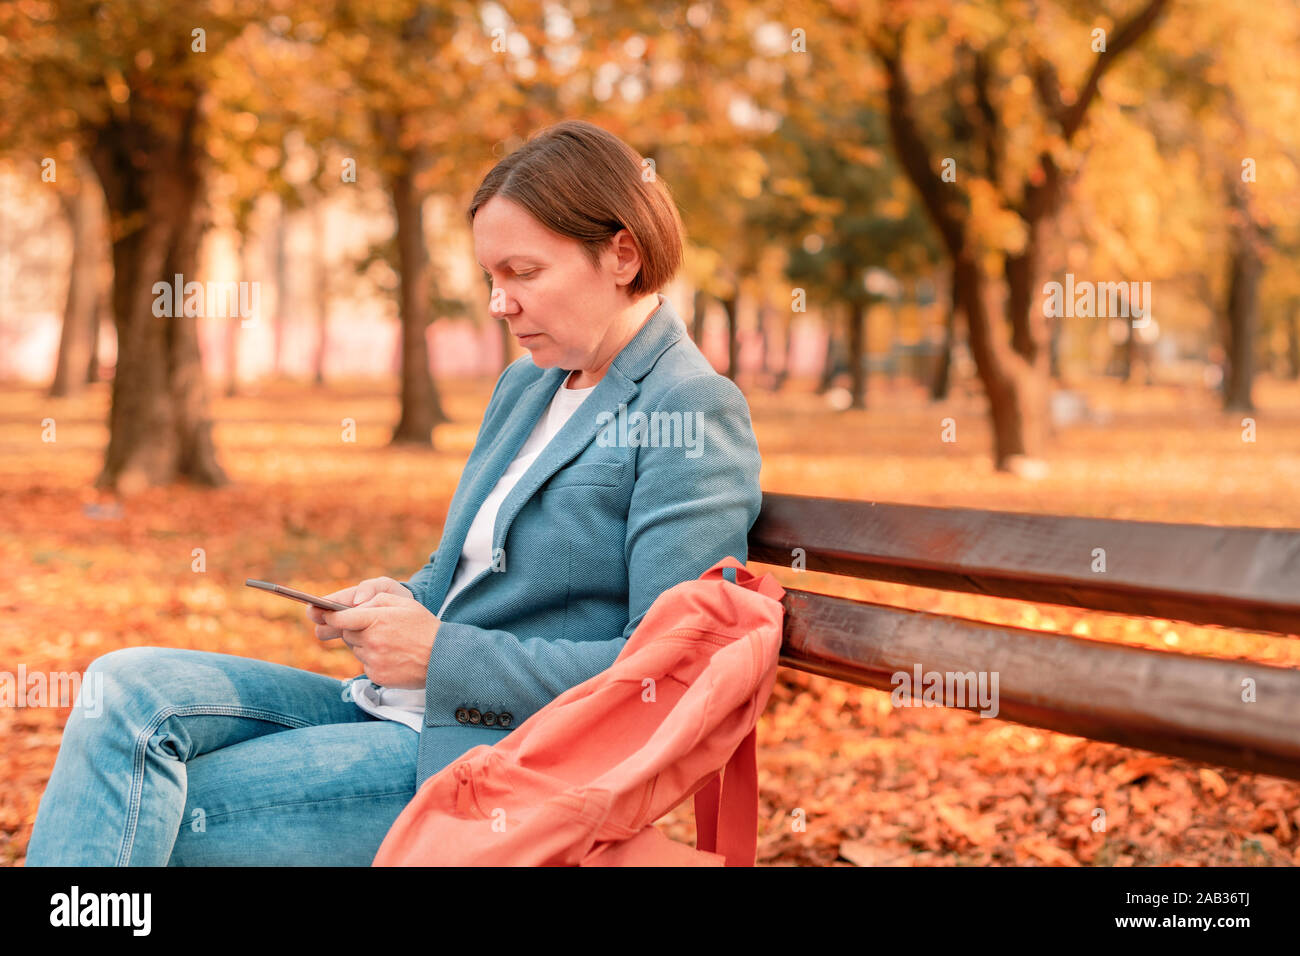 Woman typing text message on mobile phone sur banc de parc d'automne chaud d'automne, aux tons de couleurs image avec selective focus Banque D'Images